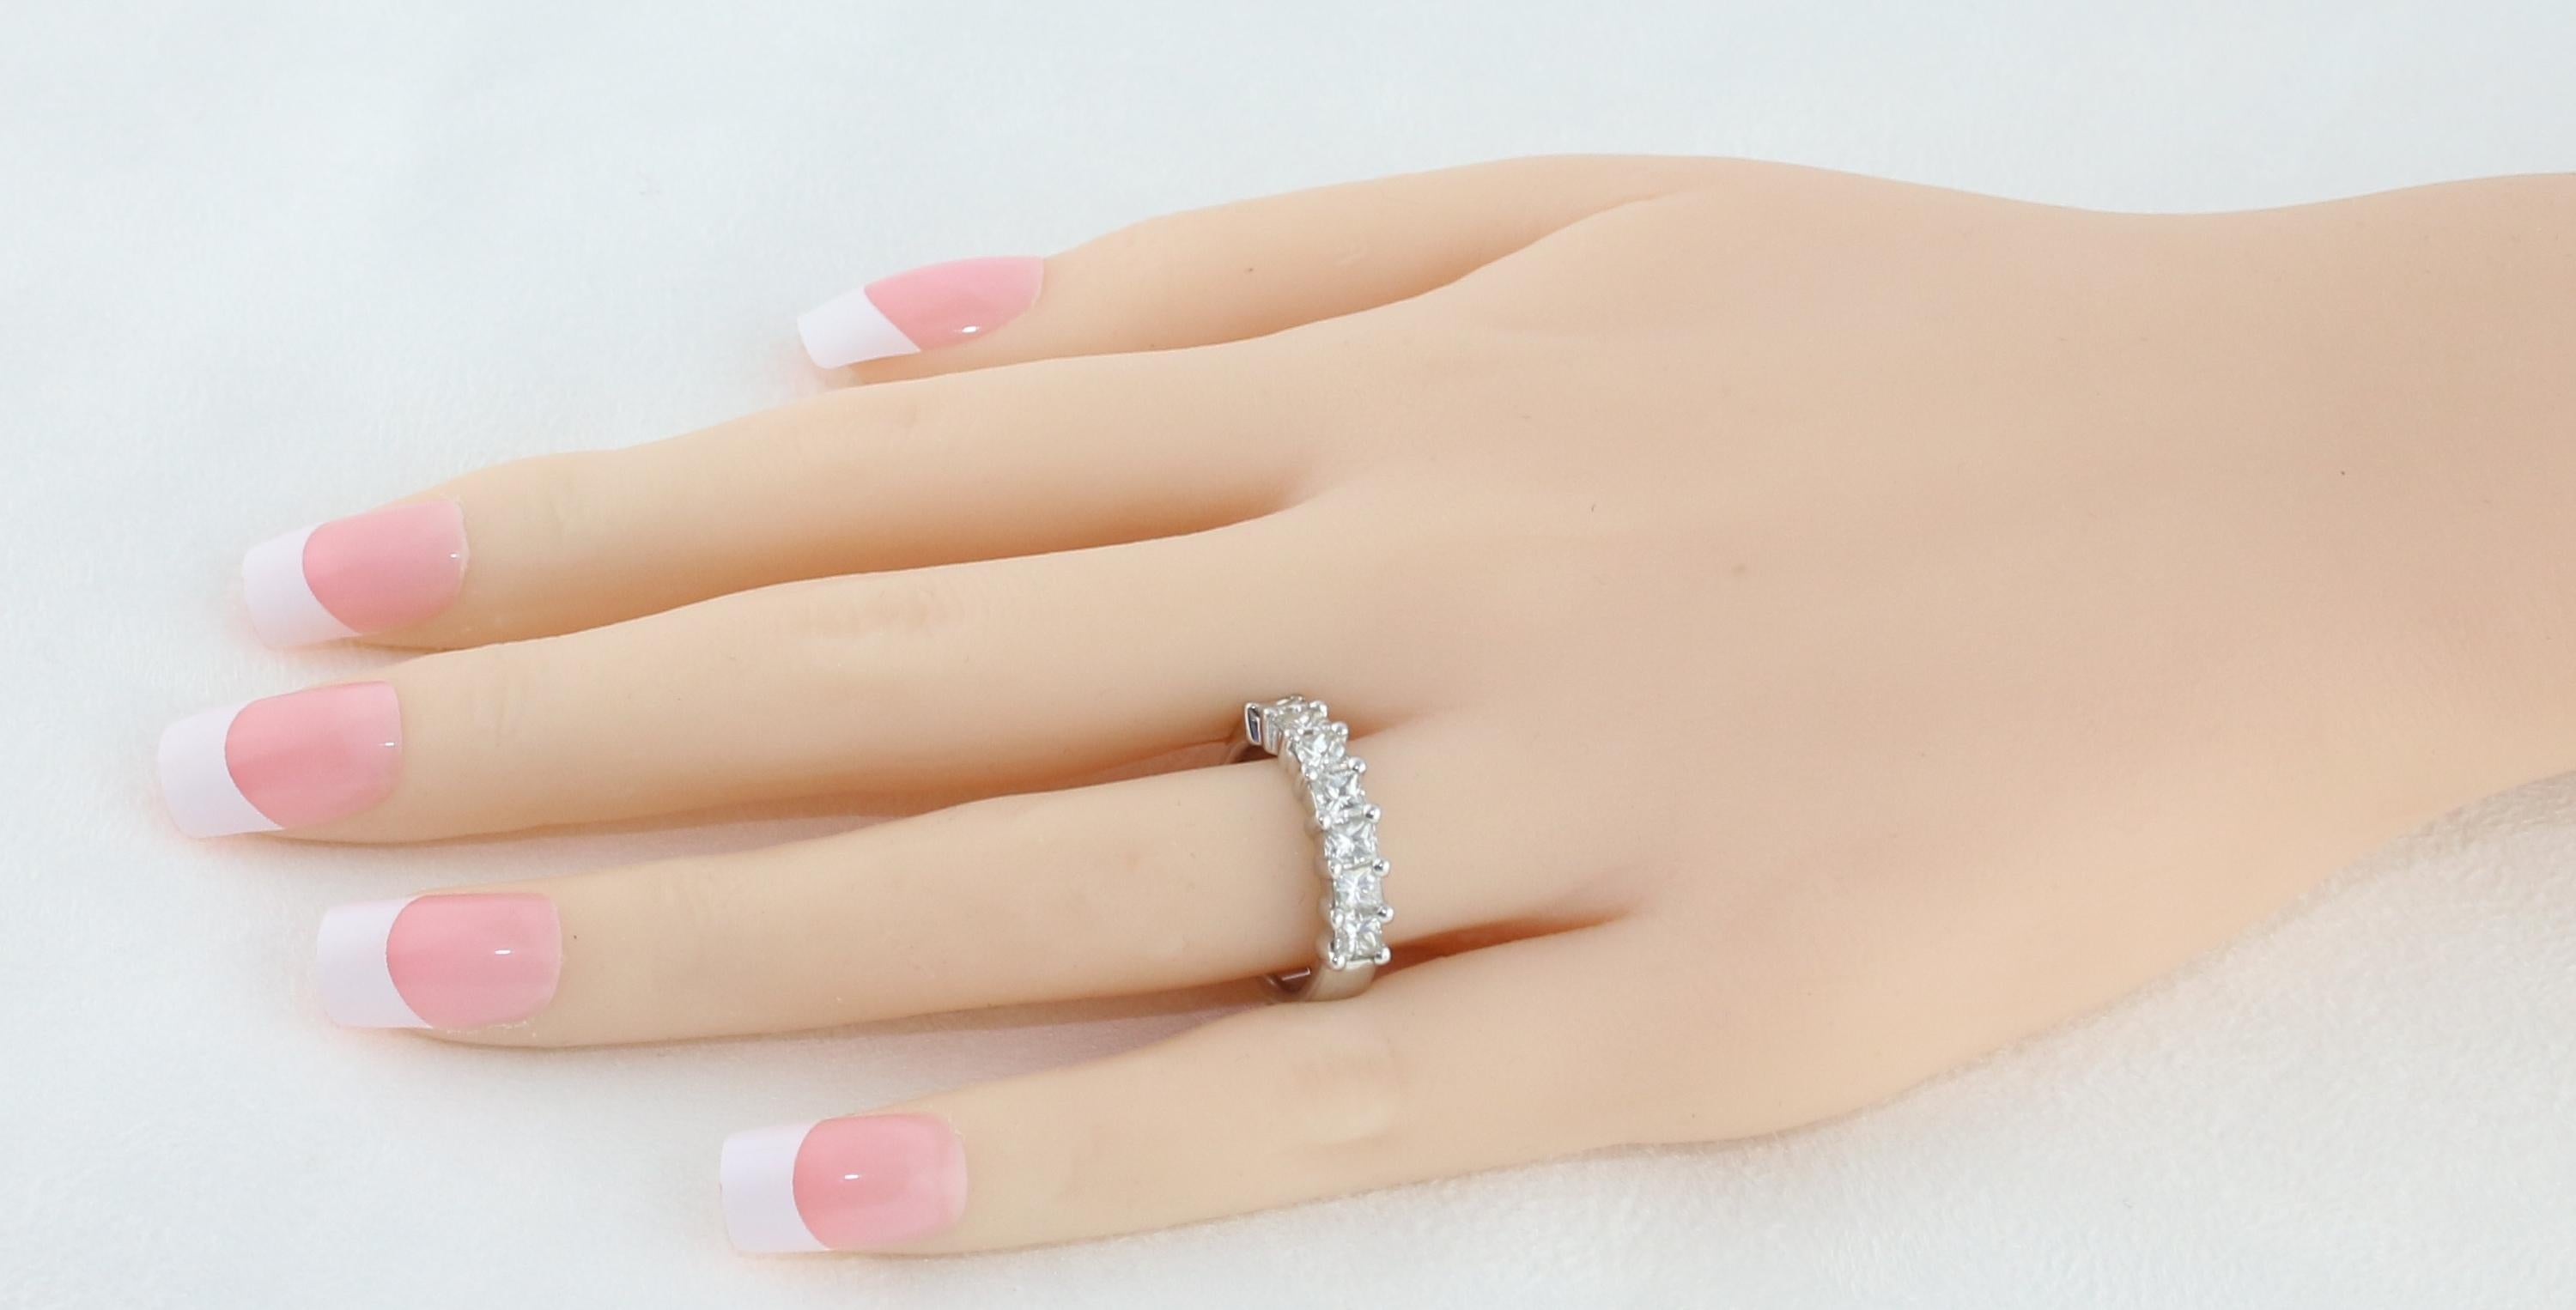 7 stone princess cut diamond ring